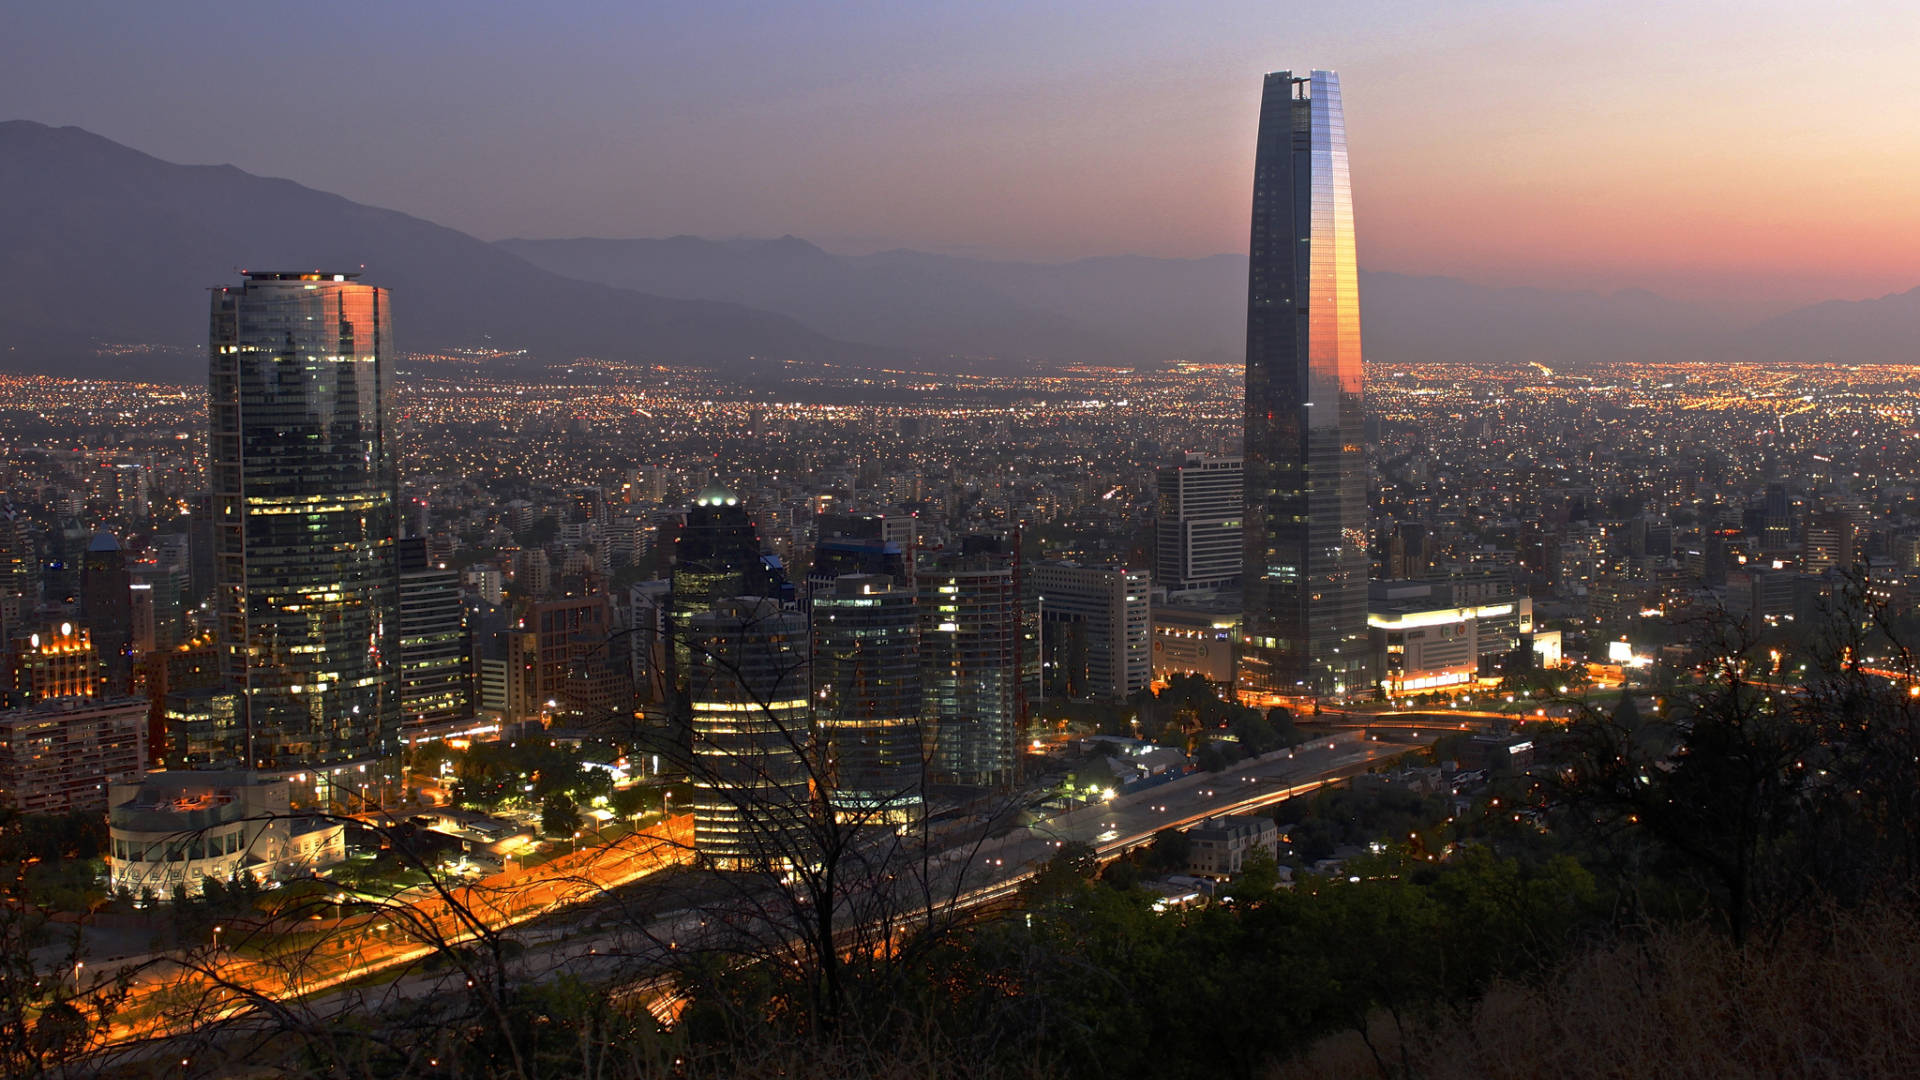 Impresionantepuesta De Sol En Santiago, Chile Con La Torre En Vista. Fondo de pantalla